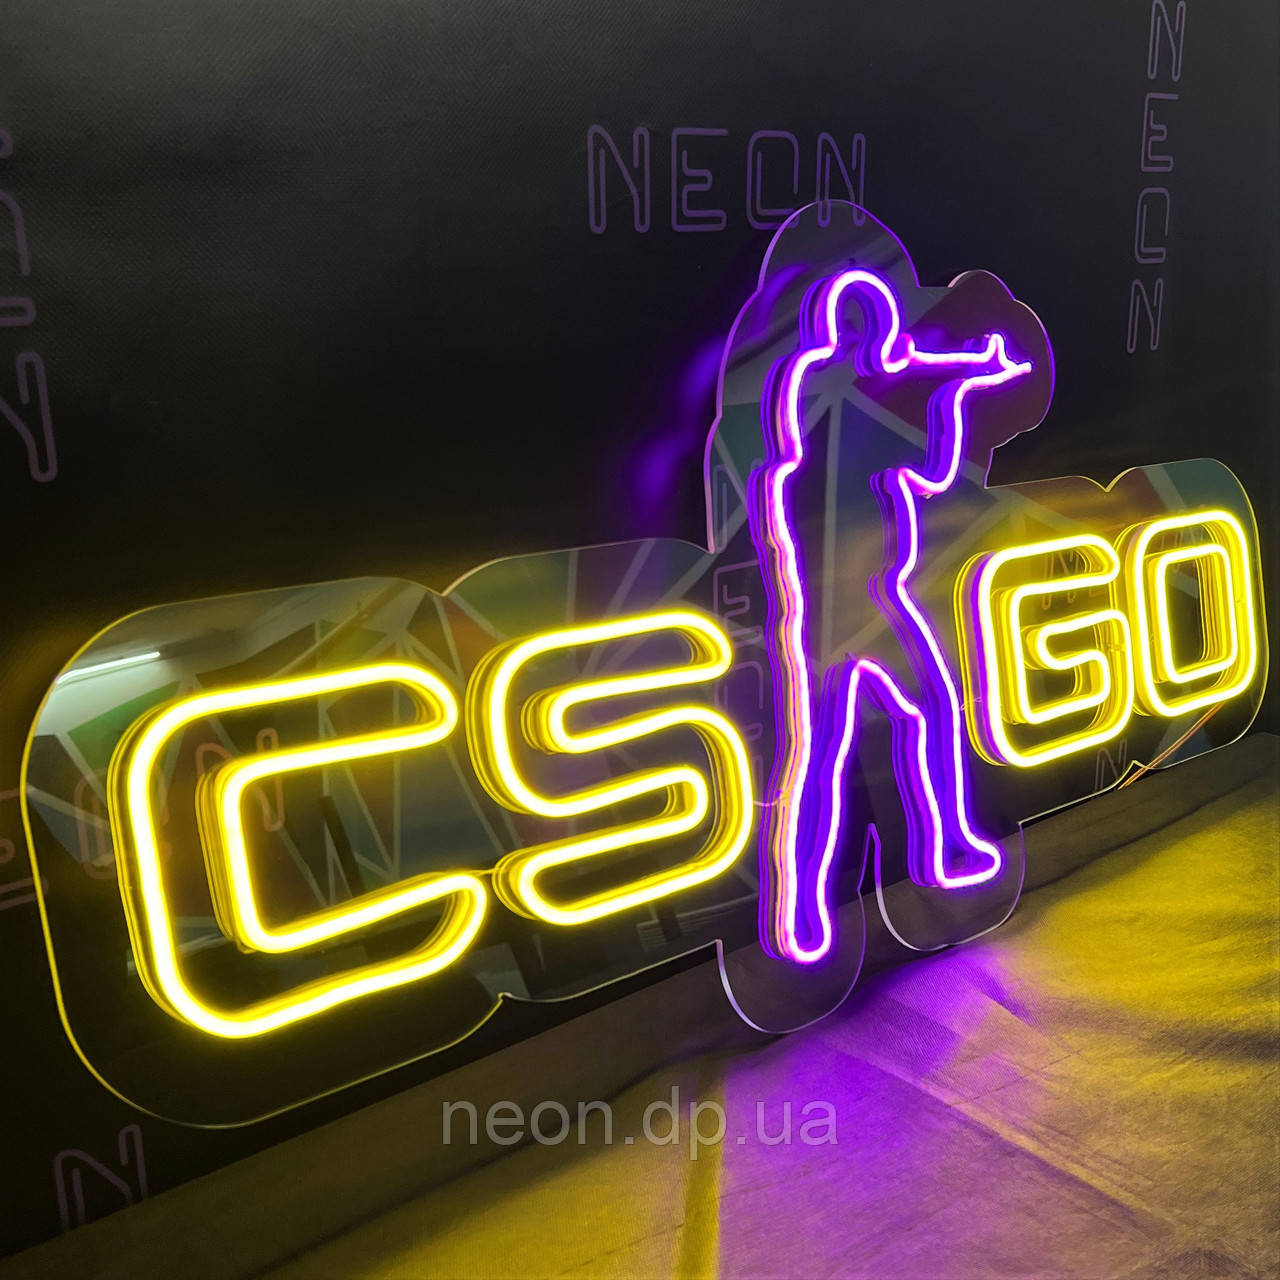 Неонова вивіска "CS GO". LED-вивіска, фото 1